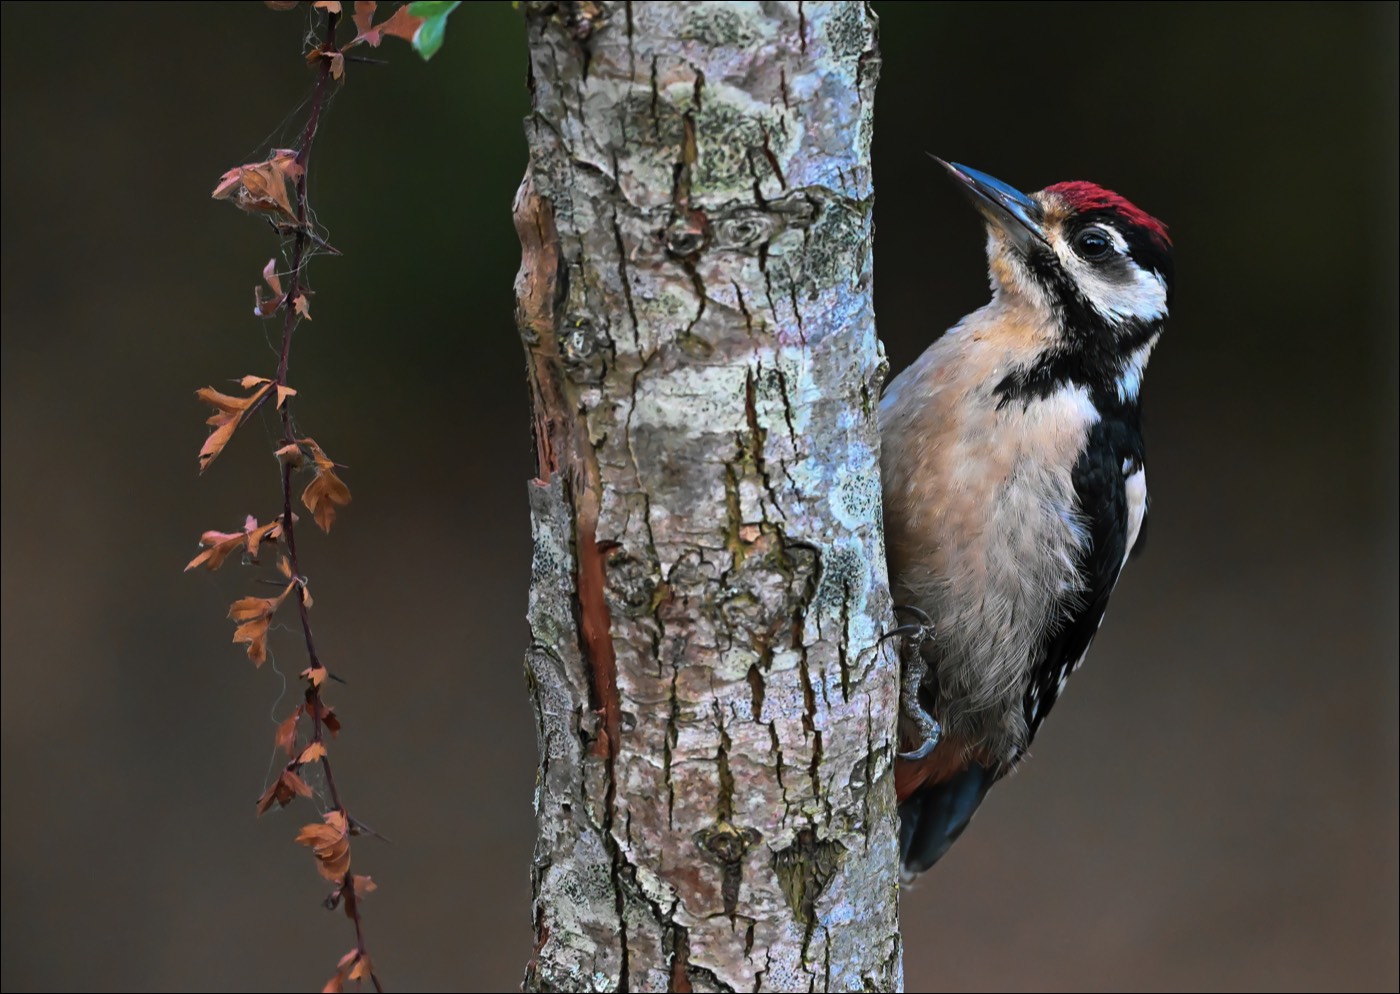 Great Spotted Woodpecker (Juv.)(Grote Bonte Specht) - Uitkerke (Belgium) - 16/07/22